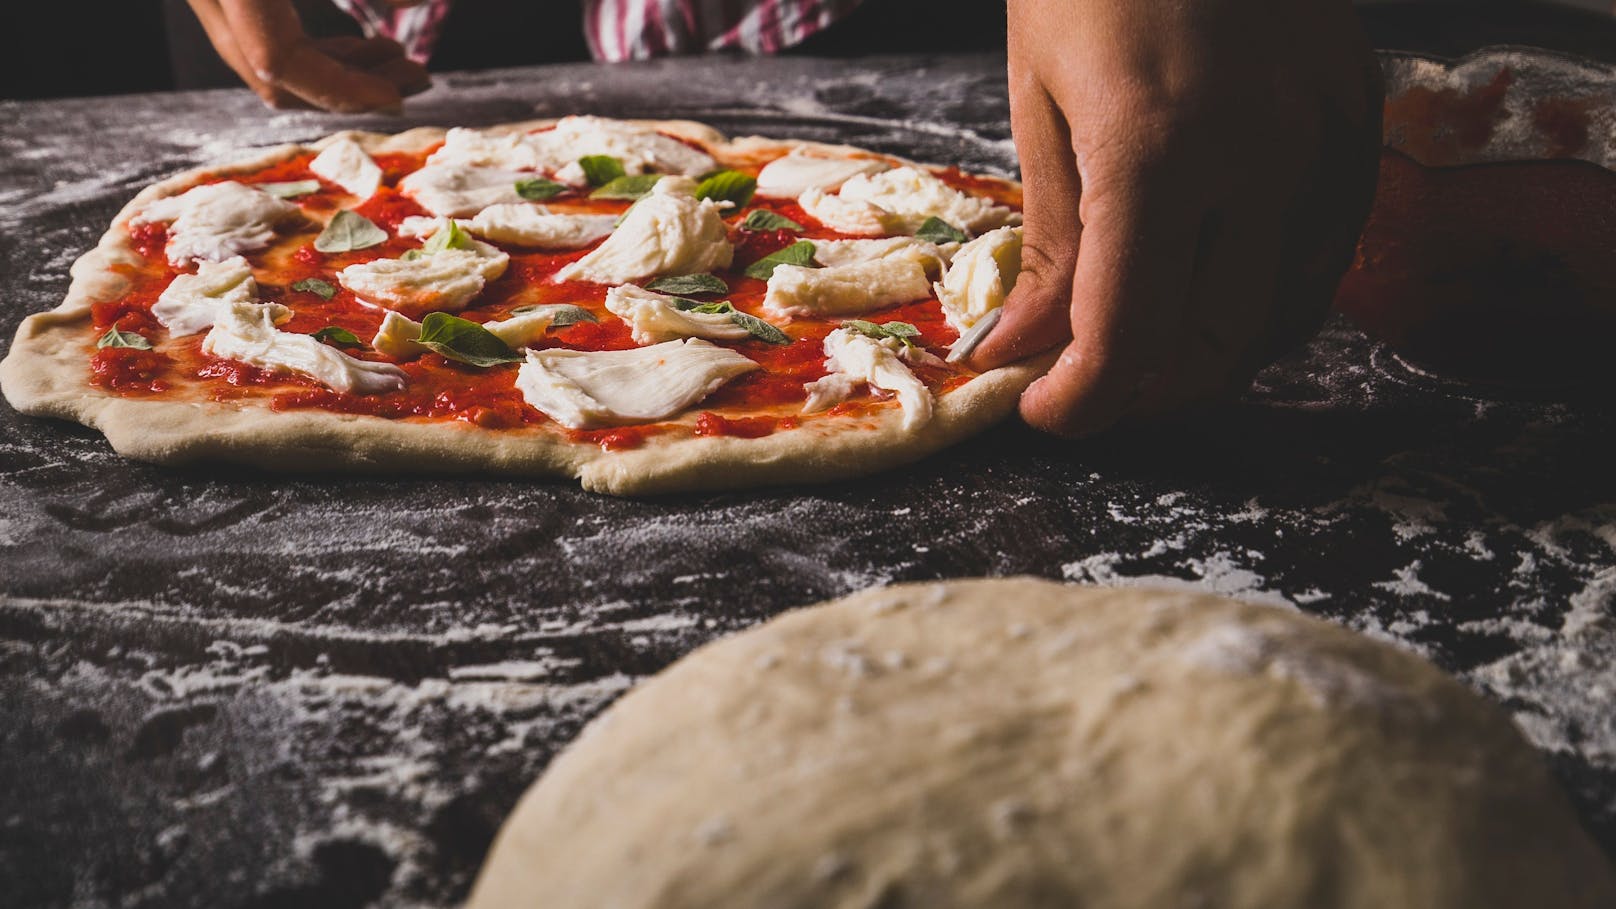 Beliebteste Pizza, doch Leser über Lieferung empört